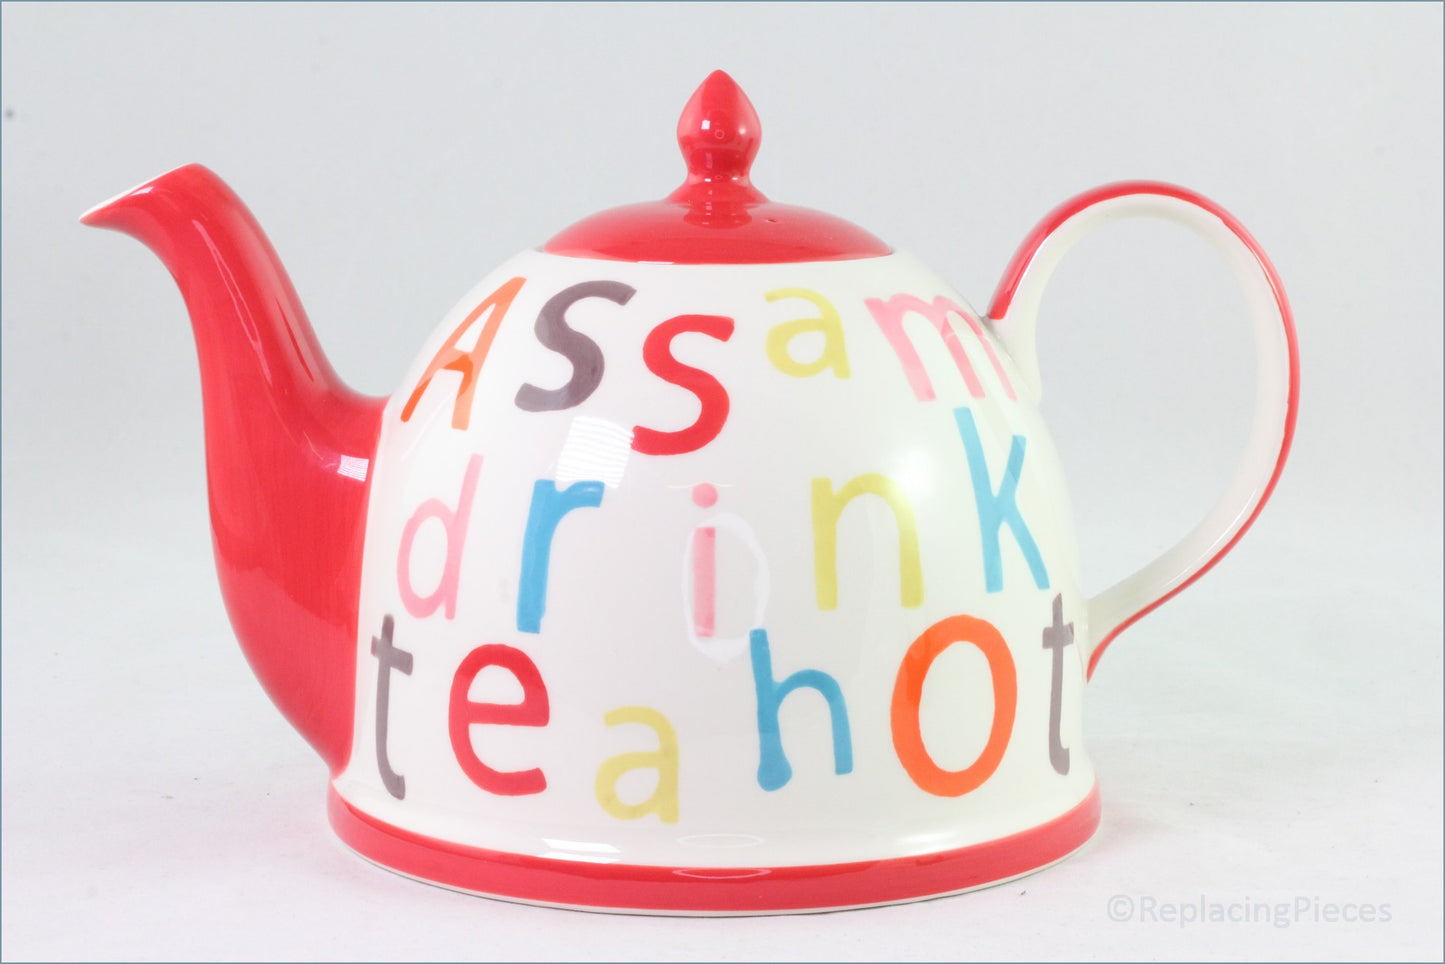 RPW170 - Whittards - Teapot (Assam, Drink, Tea, Hot)